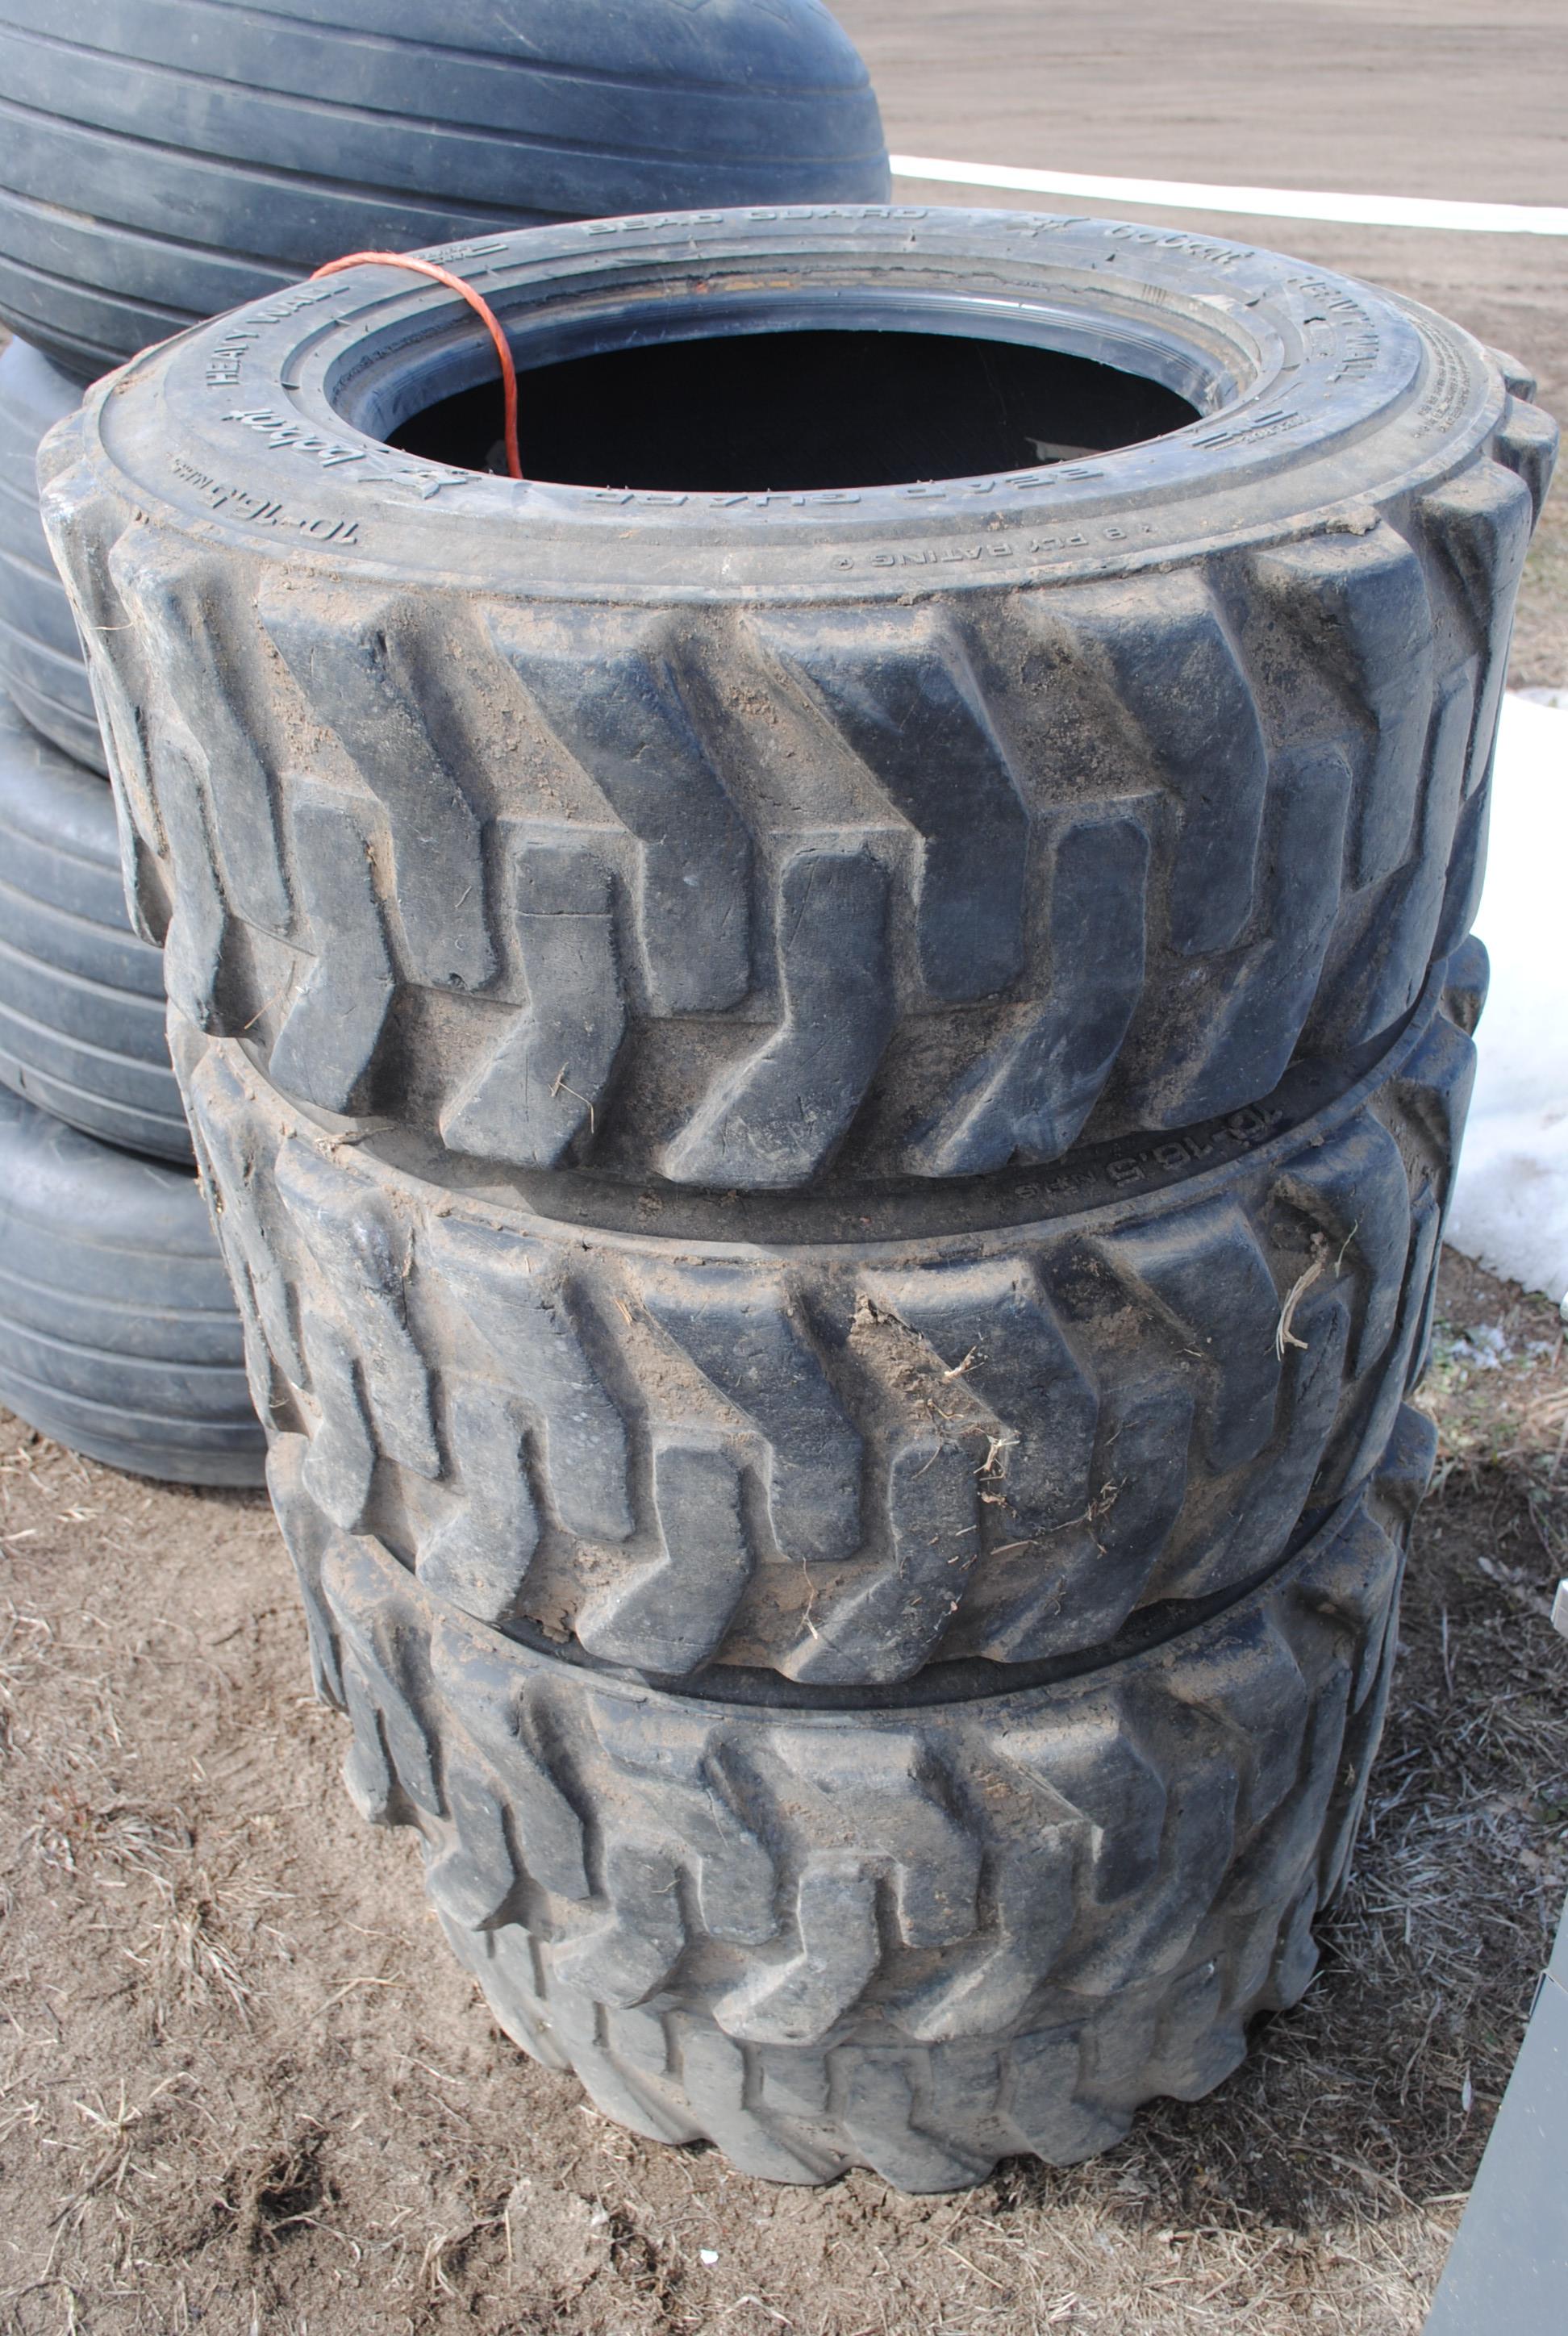 Set of 4 10-16.5 Bobcat brand skidloader tires (sell as set)